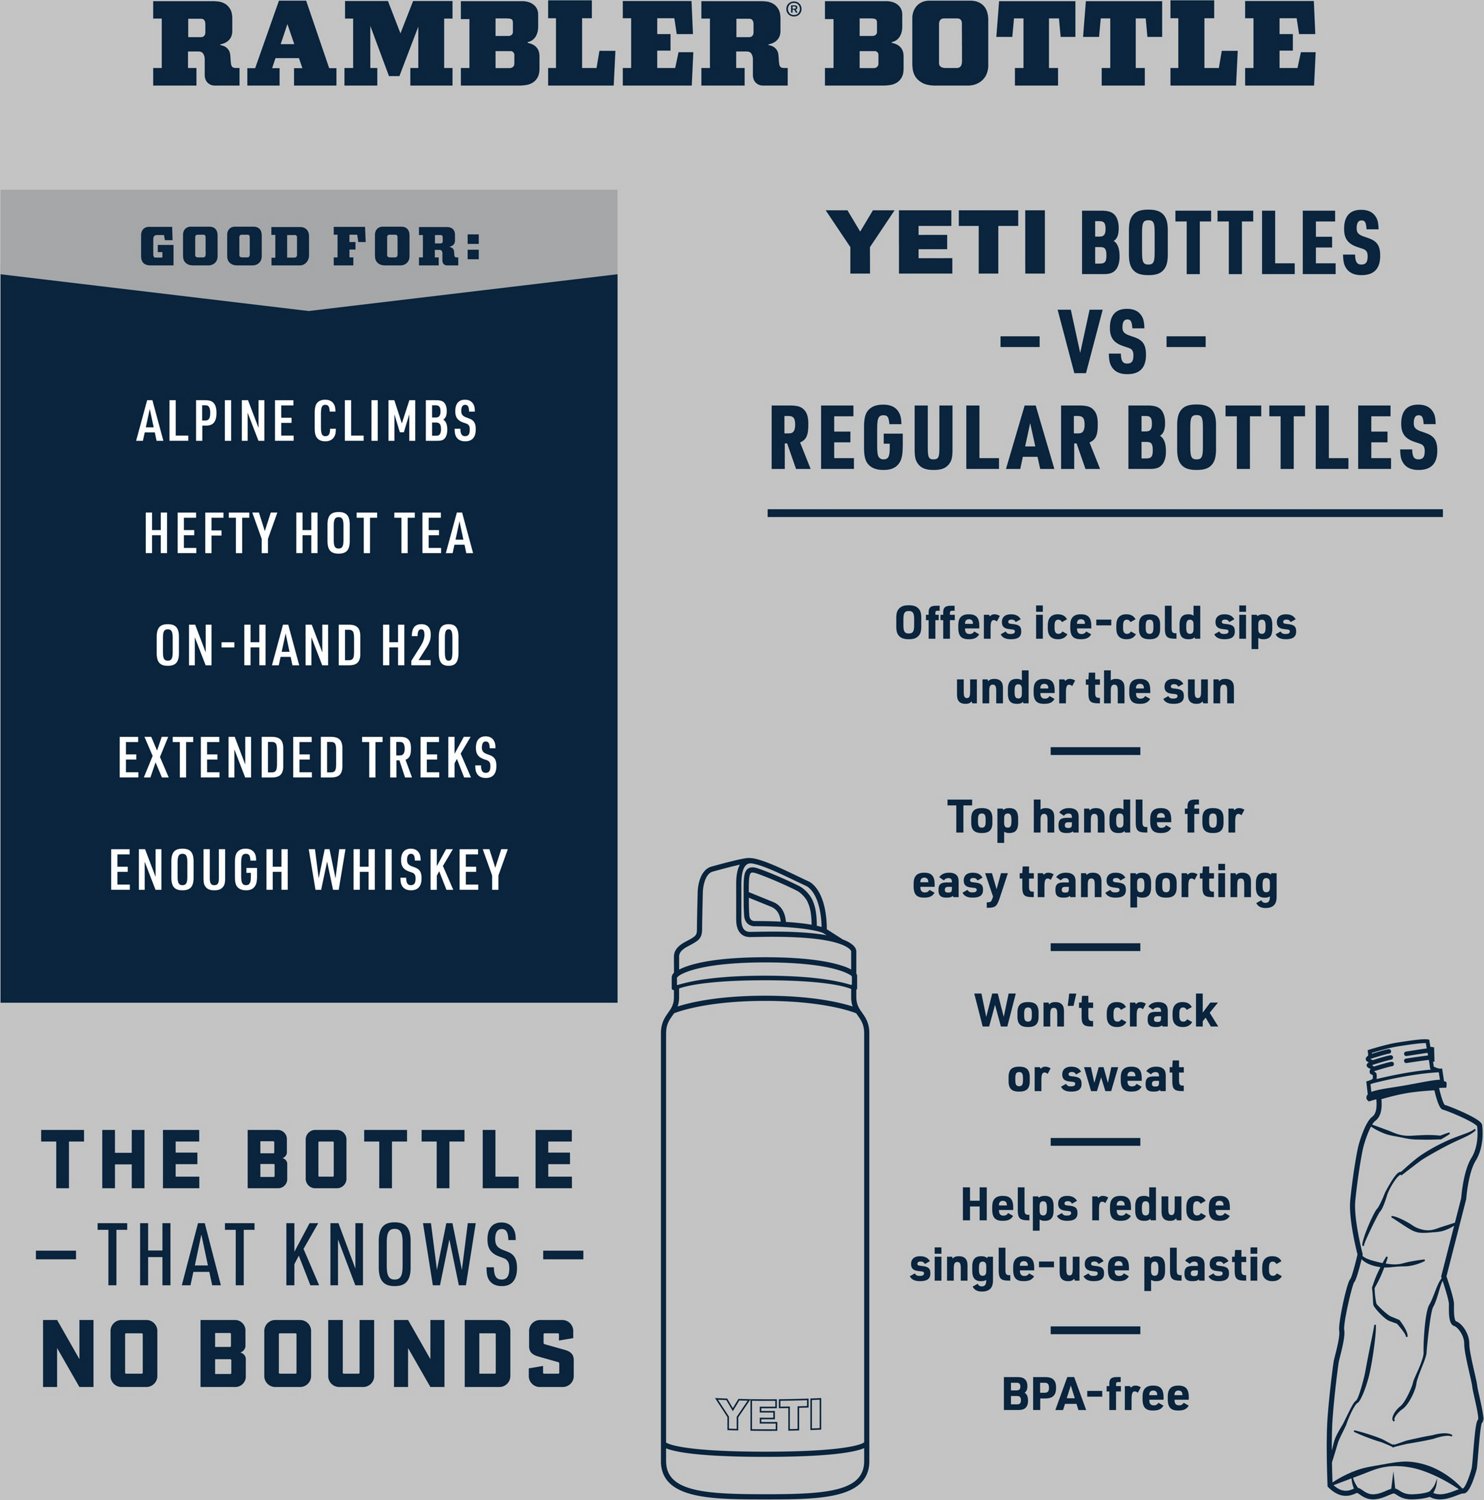 Yeti 64 oz Rambler Bottle